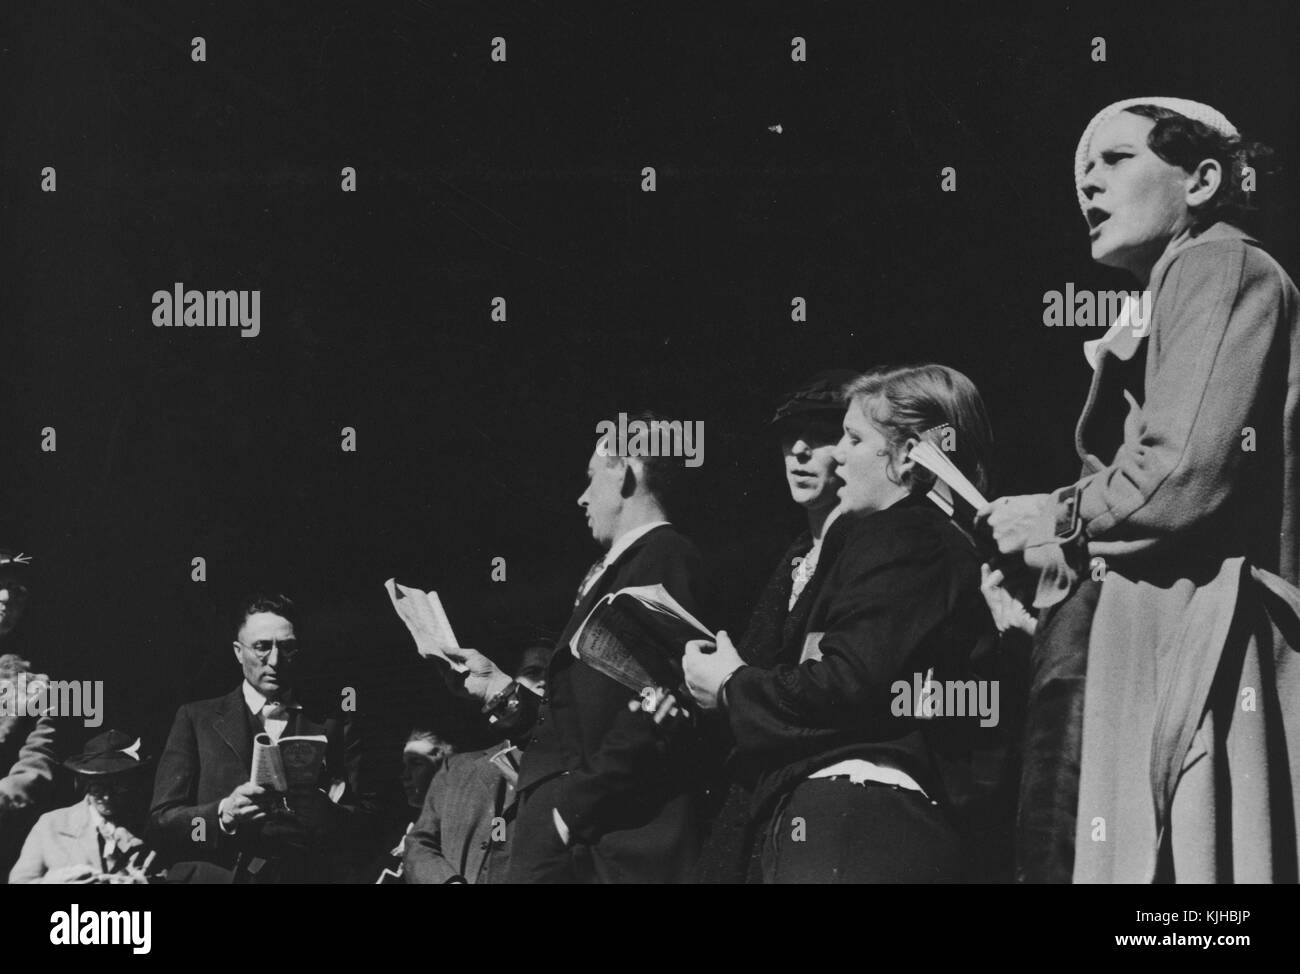 Una fotografía de un grupo de hombres y mujeres están reunidos como parte de una reunión religiosa, son la celebración hymnals y cantaban himnos hacia un público que no está demostrado, Nashville, Tennessee, 1935. A partir de la biblioteca pública de Nueva York. Foto de stock